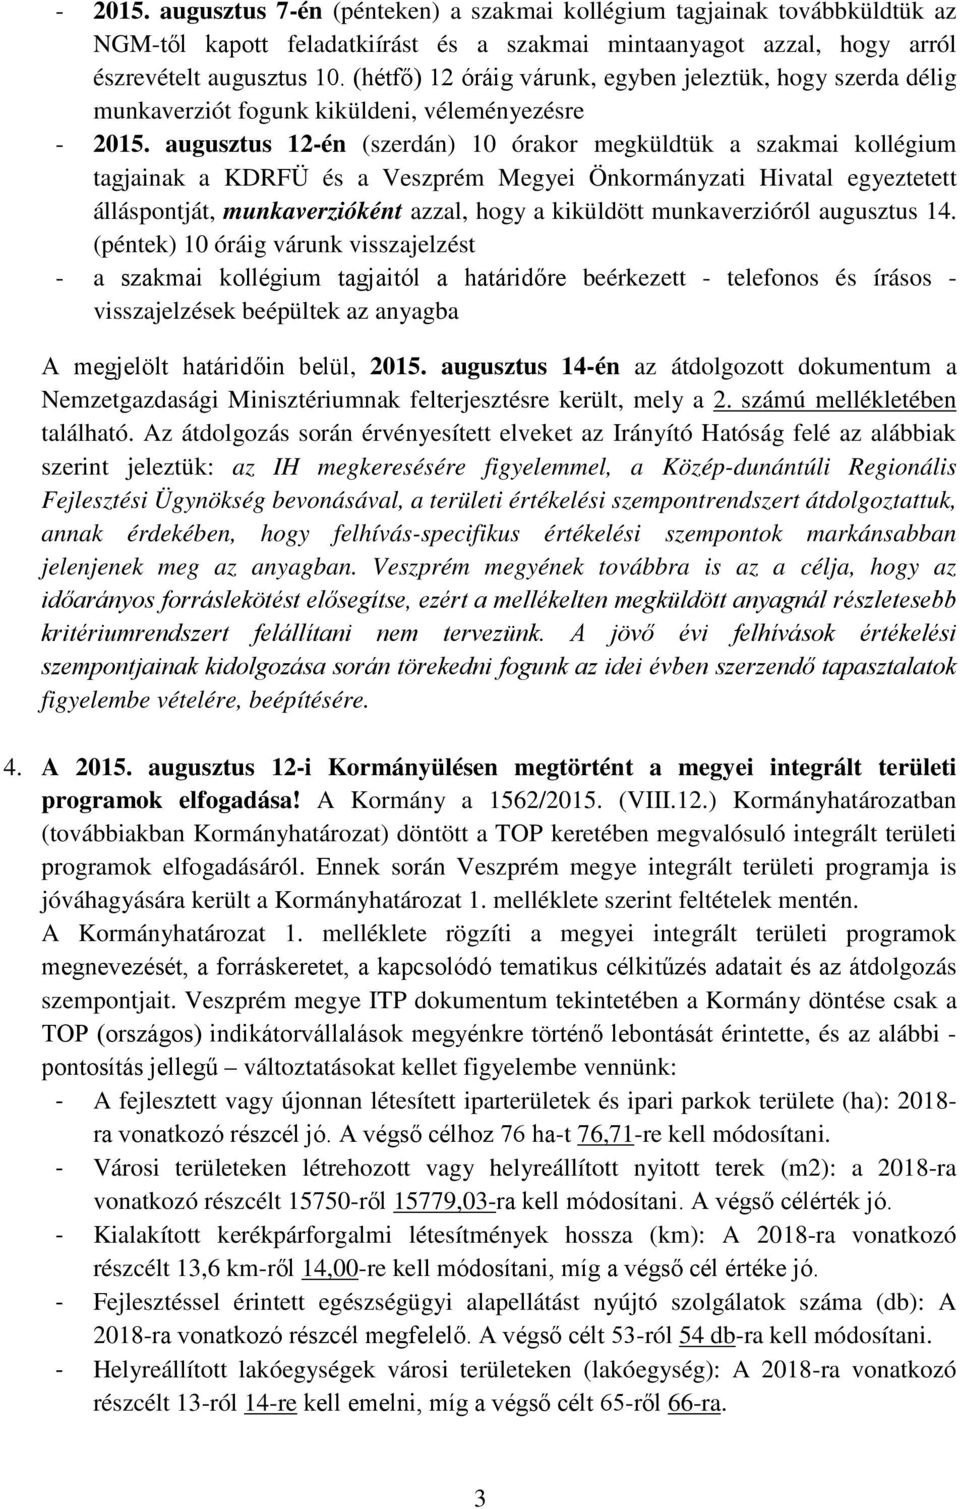 a Veszprém Megyei Önkormányzati Hivatal egyeztetett álláspontját, munkaverzióként azzal, hogy a kiküldött munkaverzióról augusztus 1 (péntek) 10 óráig várunk visszajelzést - a szakmai kollégium